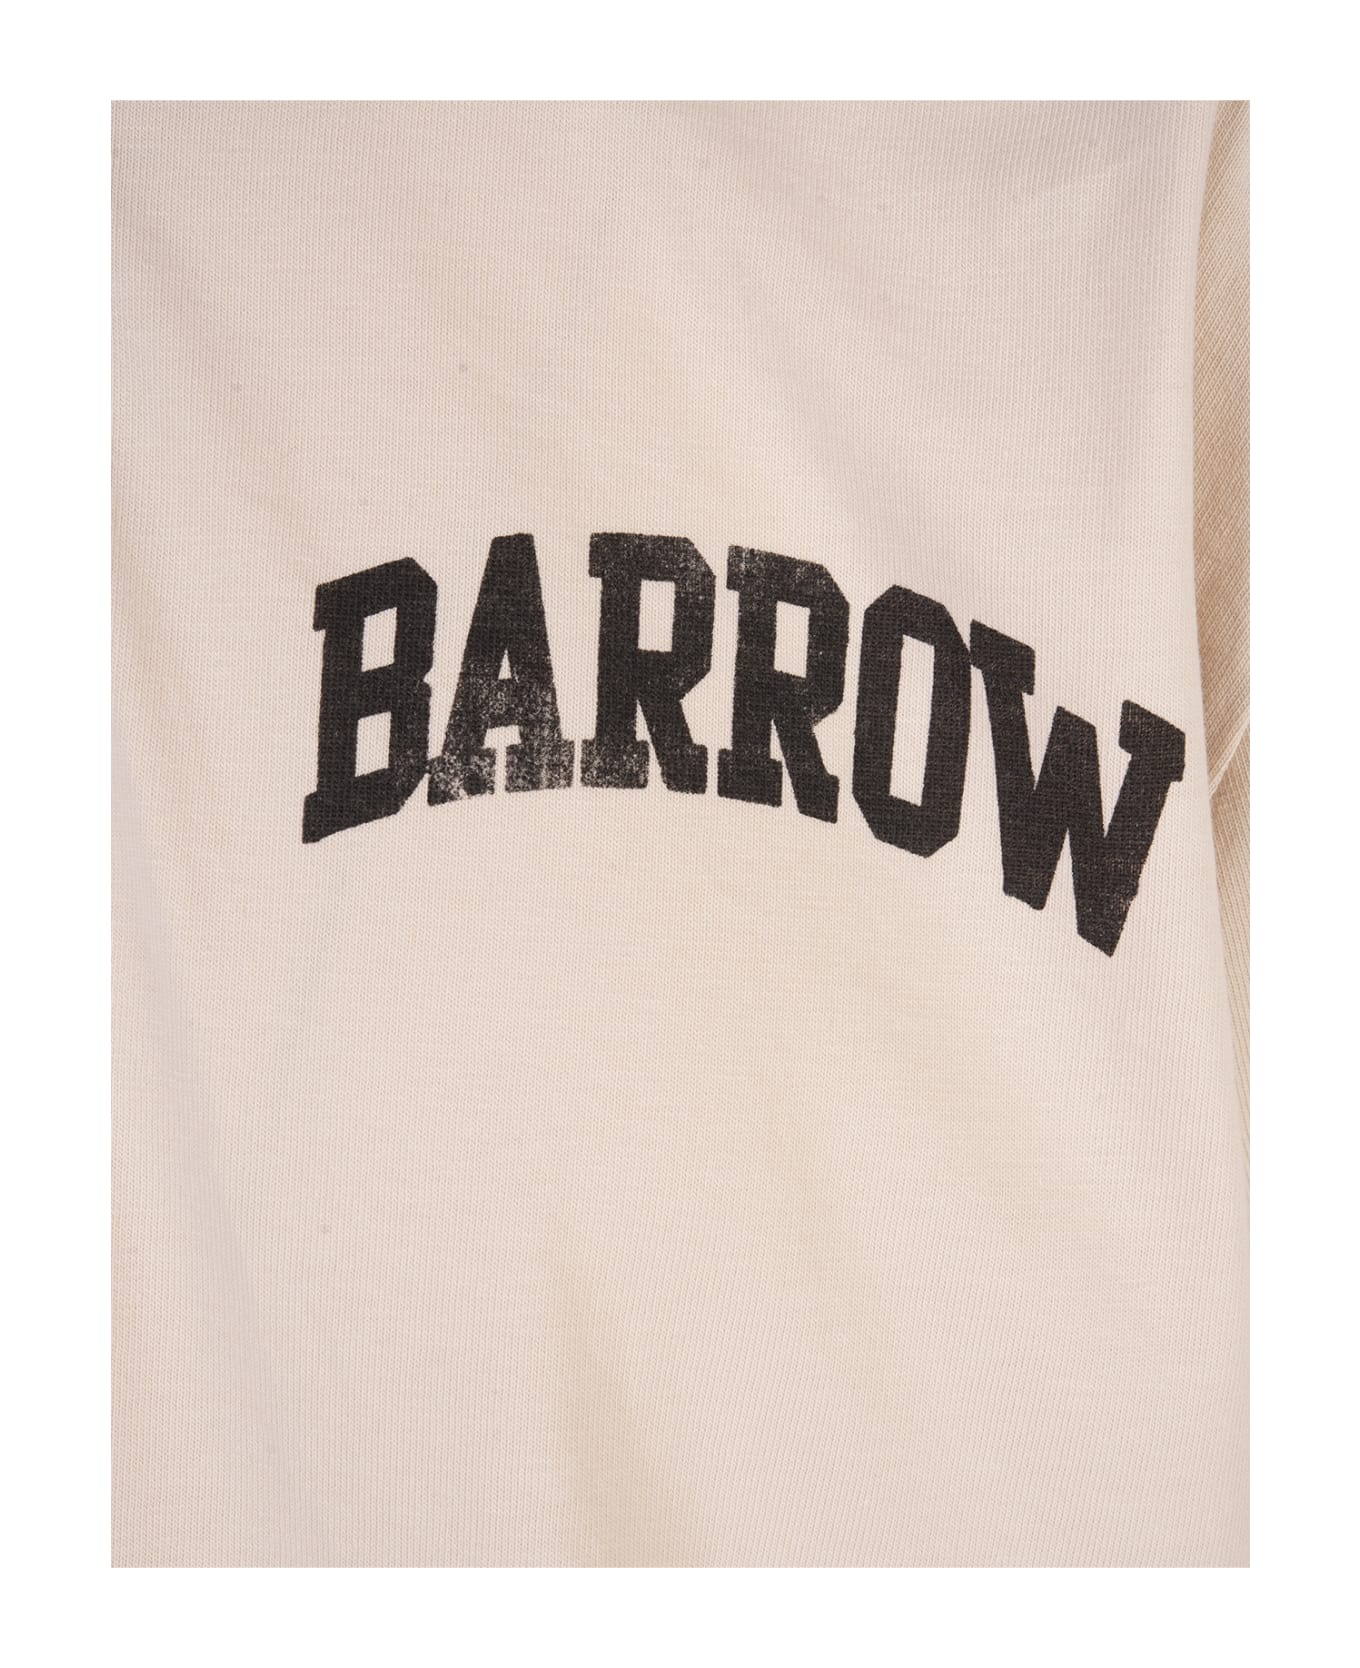 Barrow Dove Polo Shirt With Logo And Smile - Brown